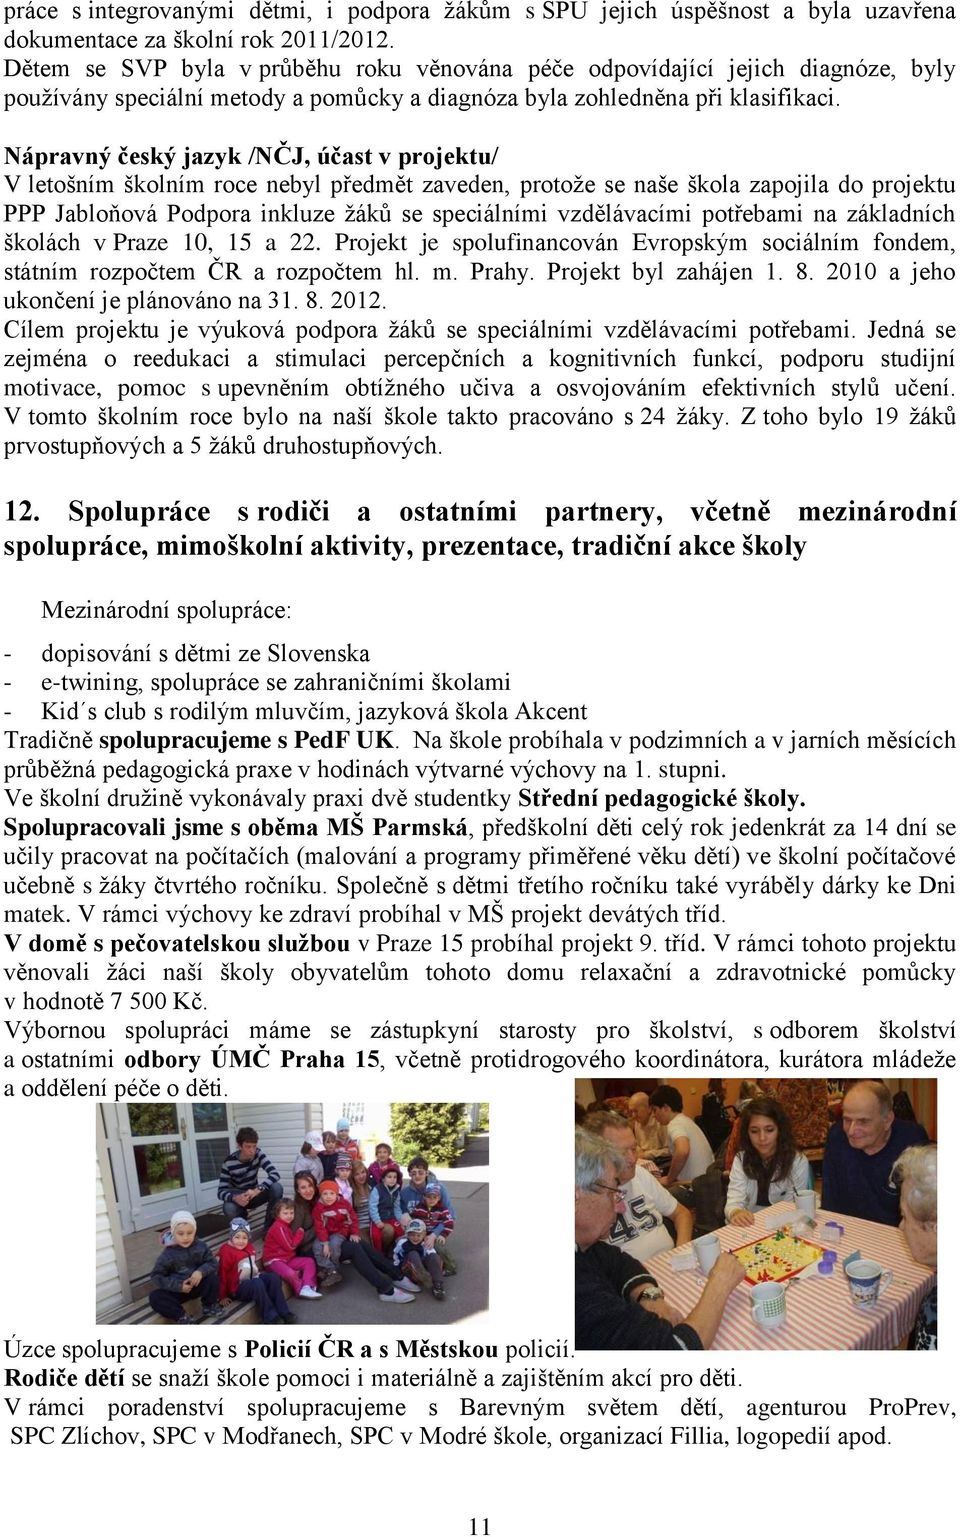 Nápravný český jazyk /NČJ, účast v projektu/ V letošním školním roce nebyl předmět zaveden, protože se naše škola zapojila do projektu PPP Jabloňová Podpora inkluze žáků se speciálními vzdělávacími